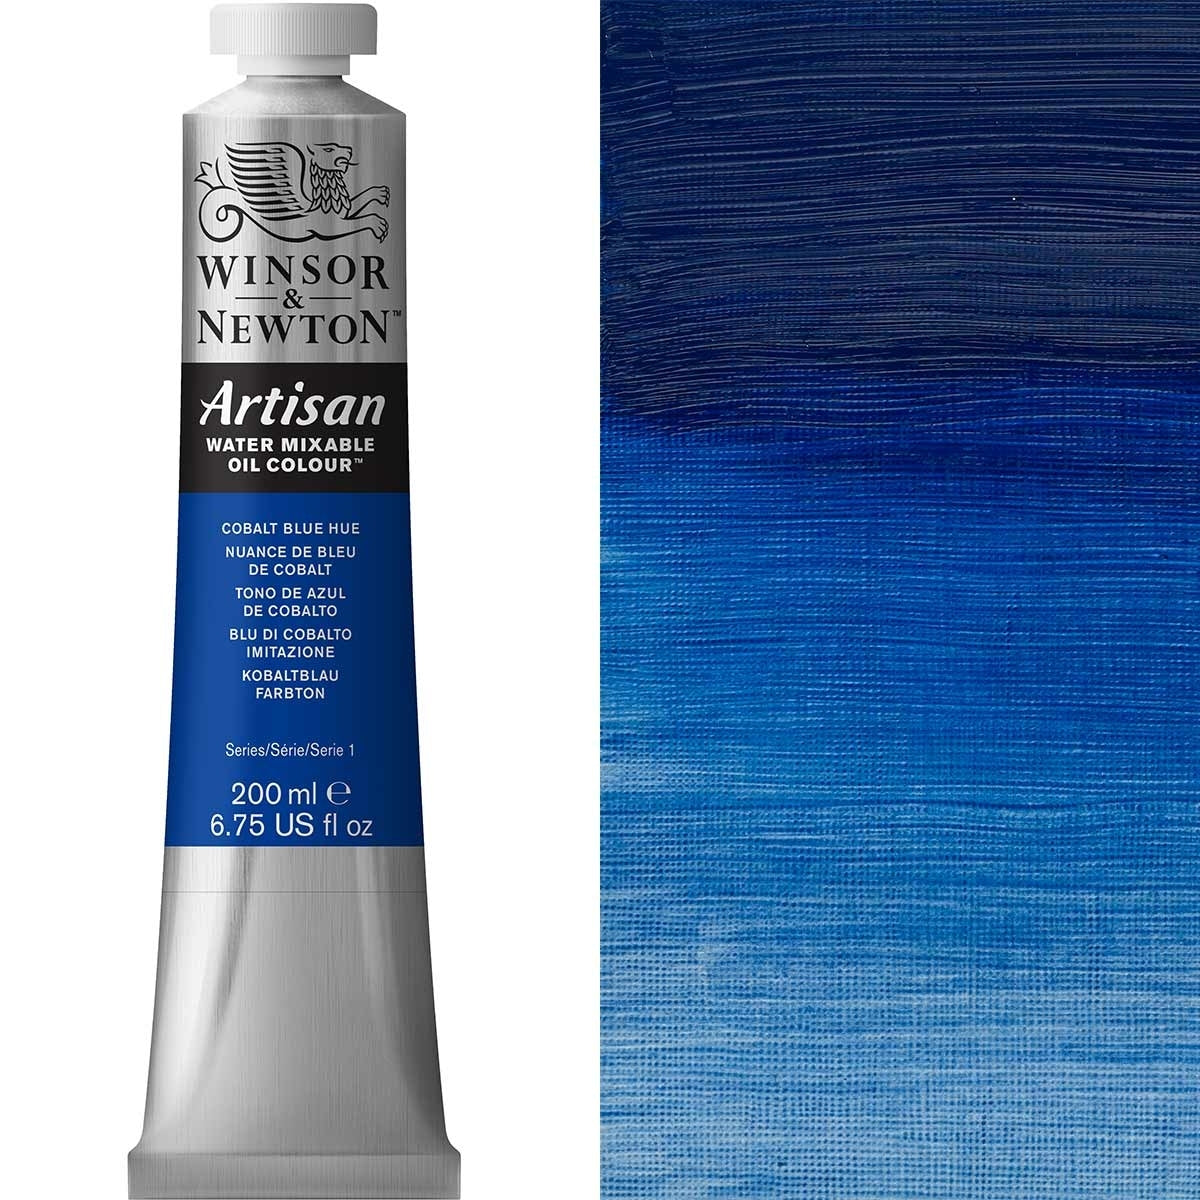 Winsor en Newton - Artisan Oil Color Water Mixable - 200ml - Cobalt Blue Hue